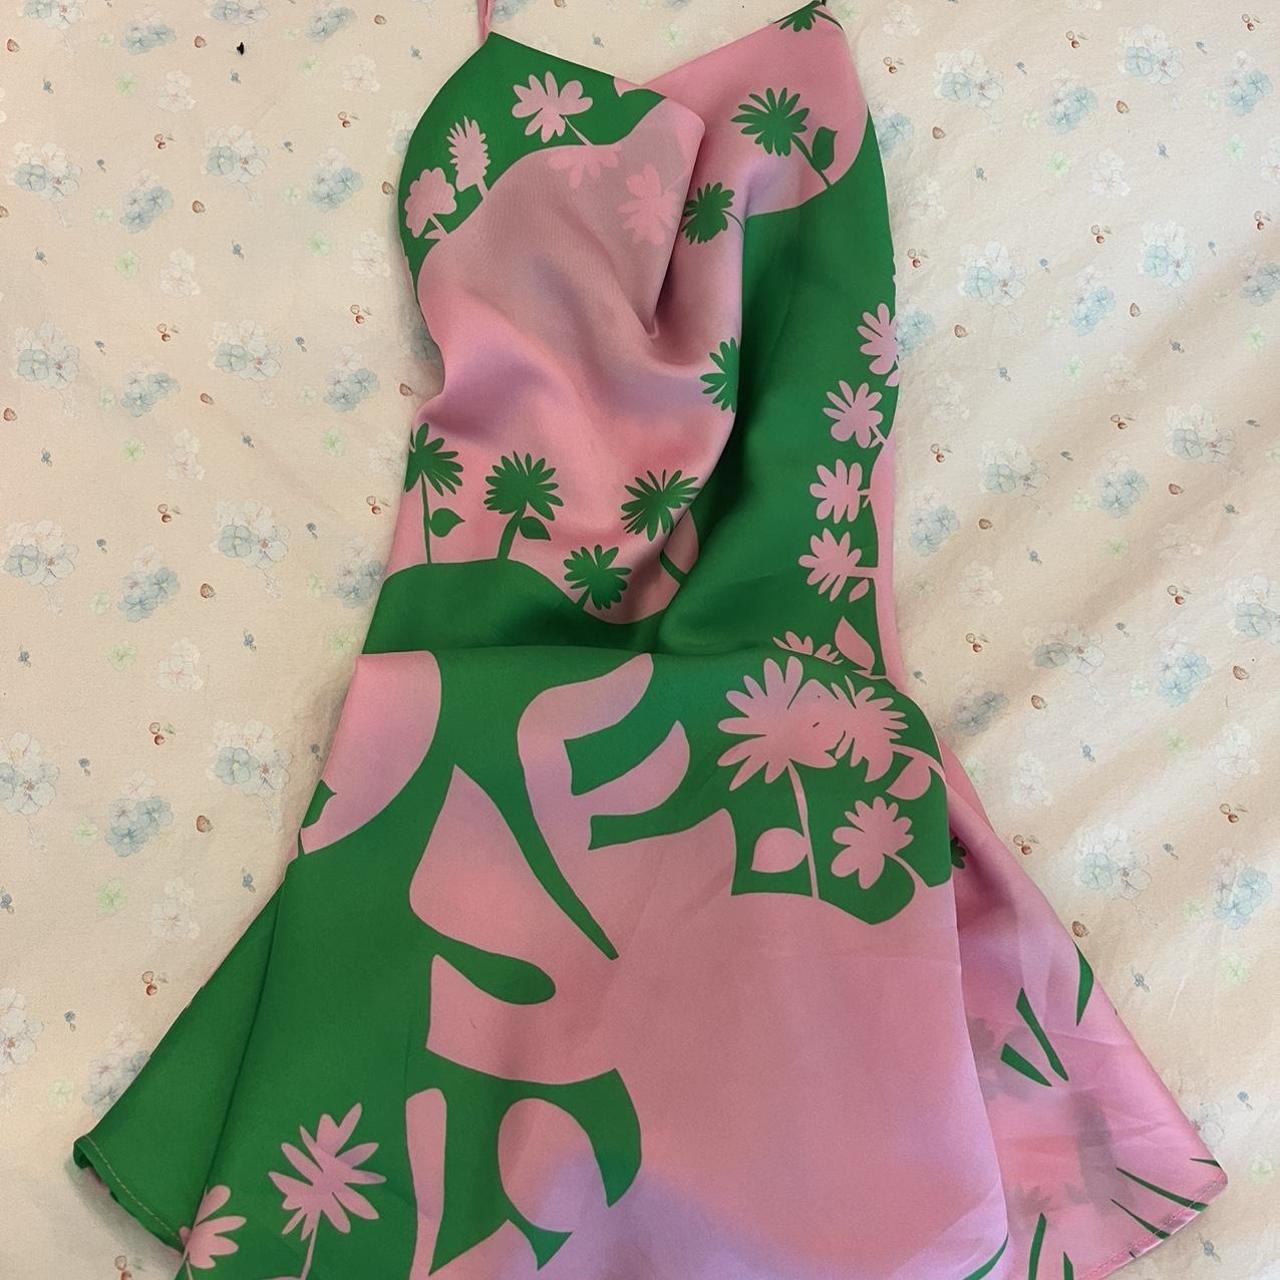 Zara Women's Pink and Green Dress | Depop